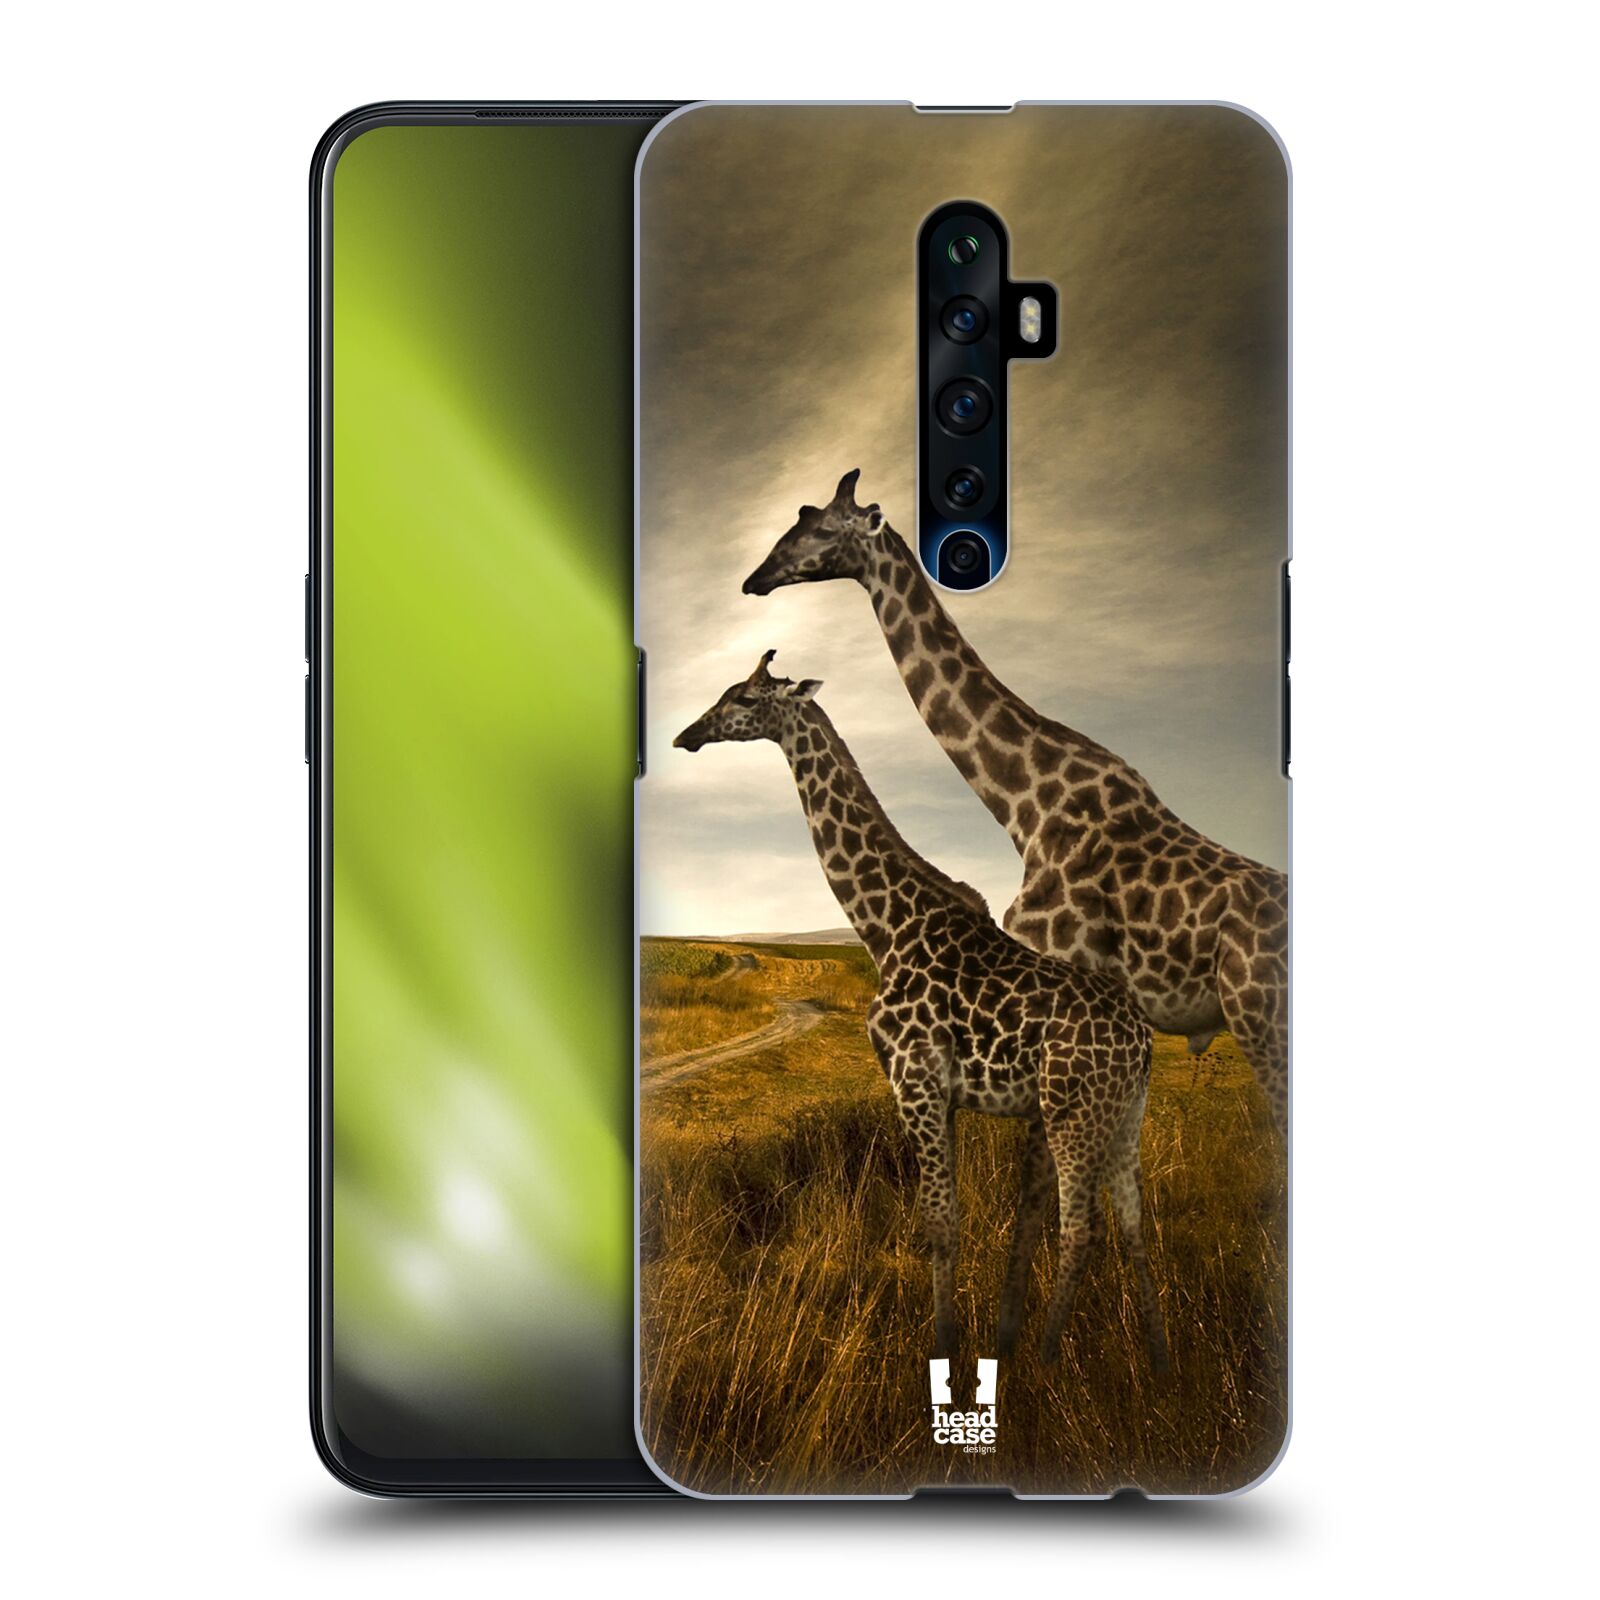 Zadní obal pro mobil Oppo Reno 2Z - HEAD CASE - Svět zvířat žirafy